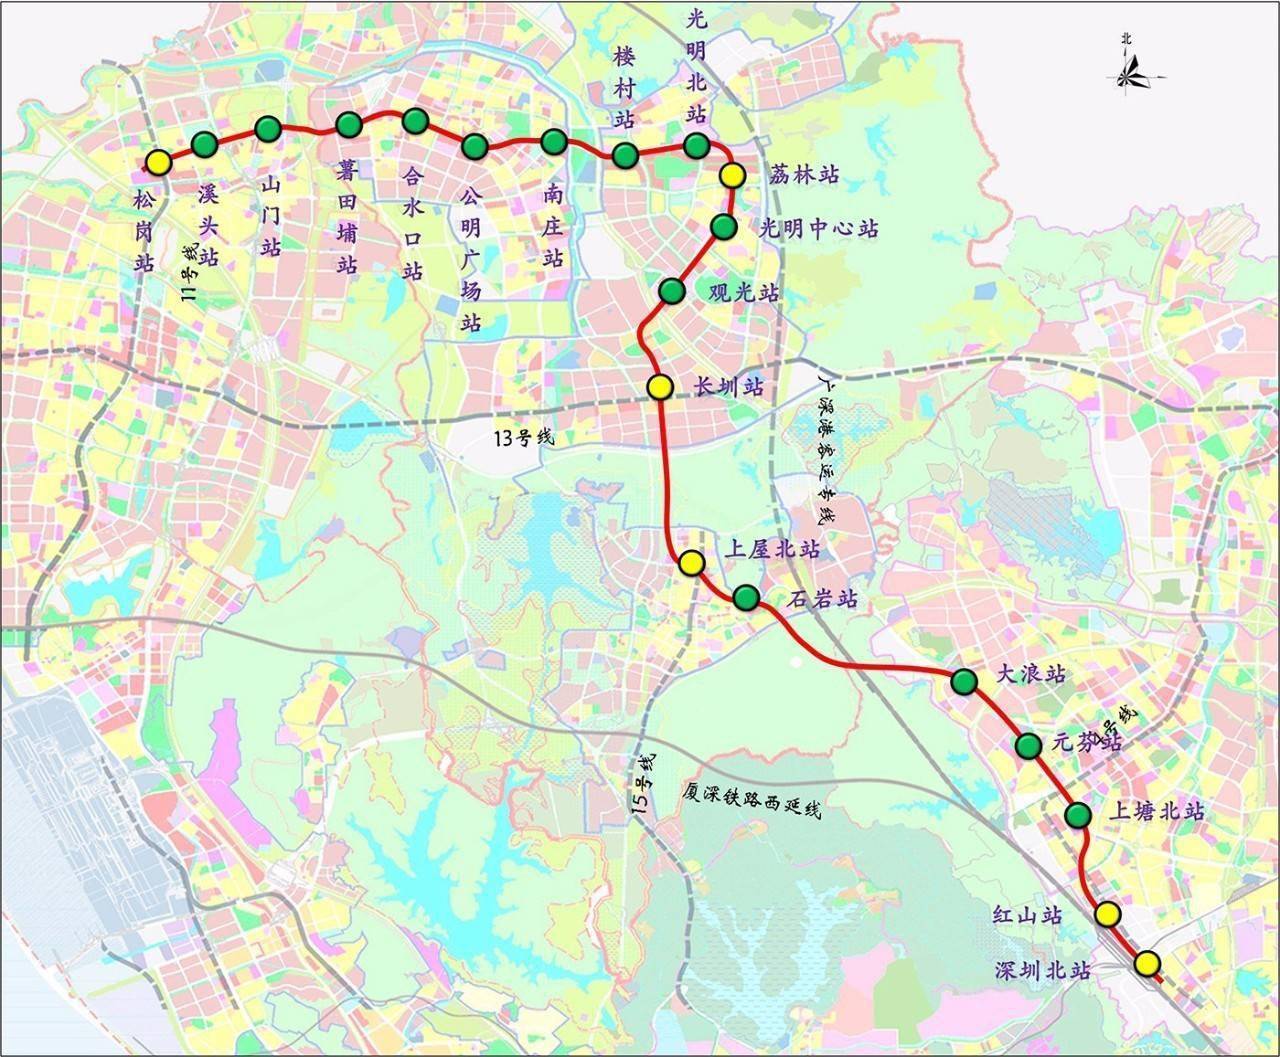 深圳6号线开通时间公布光明结束无地铁时代附沿线新盘